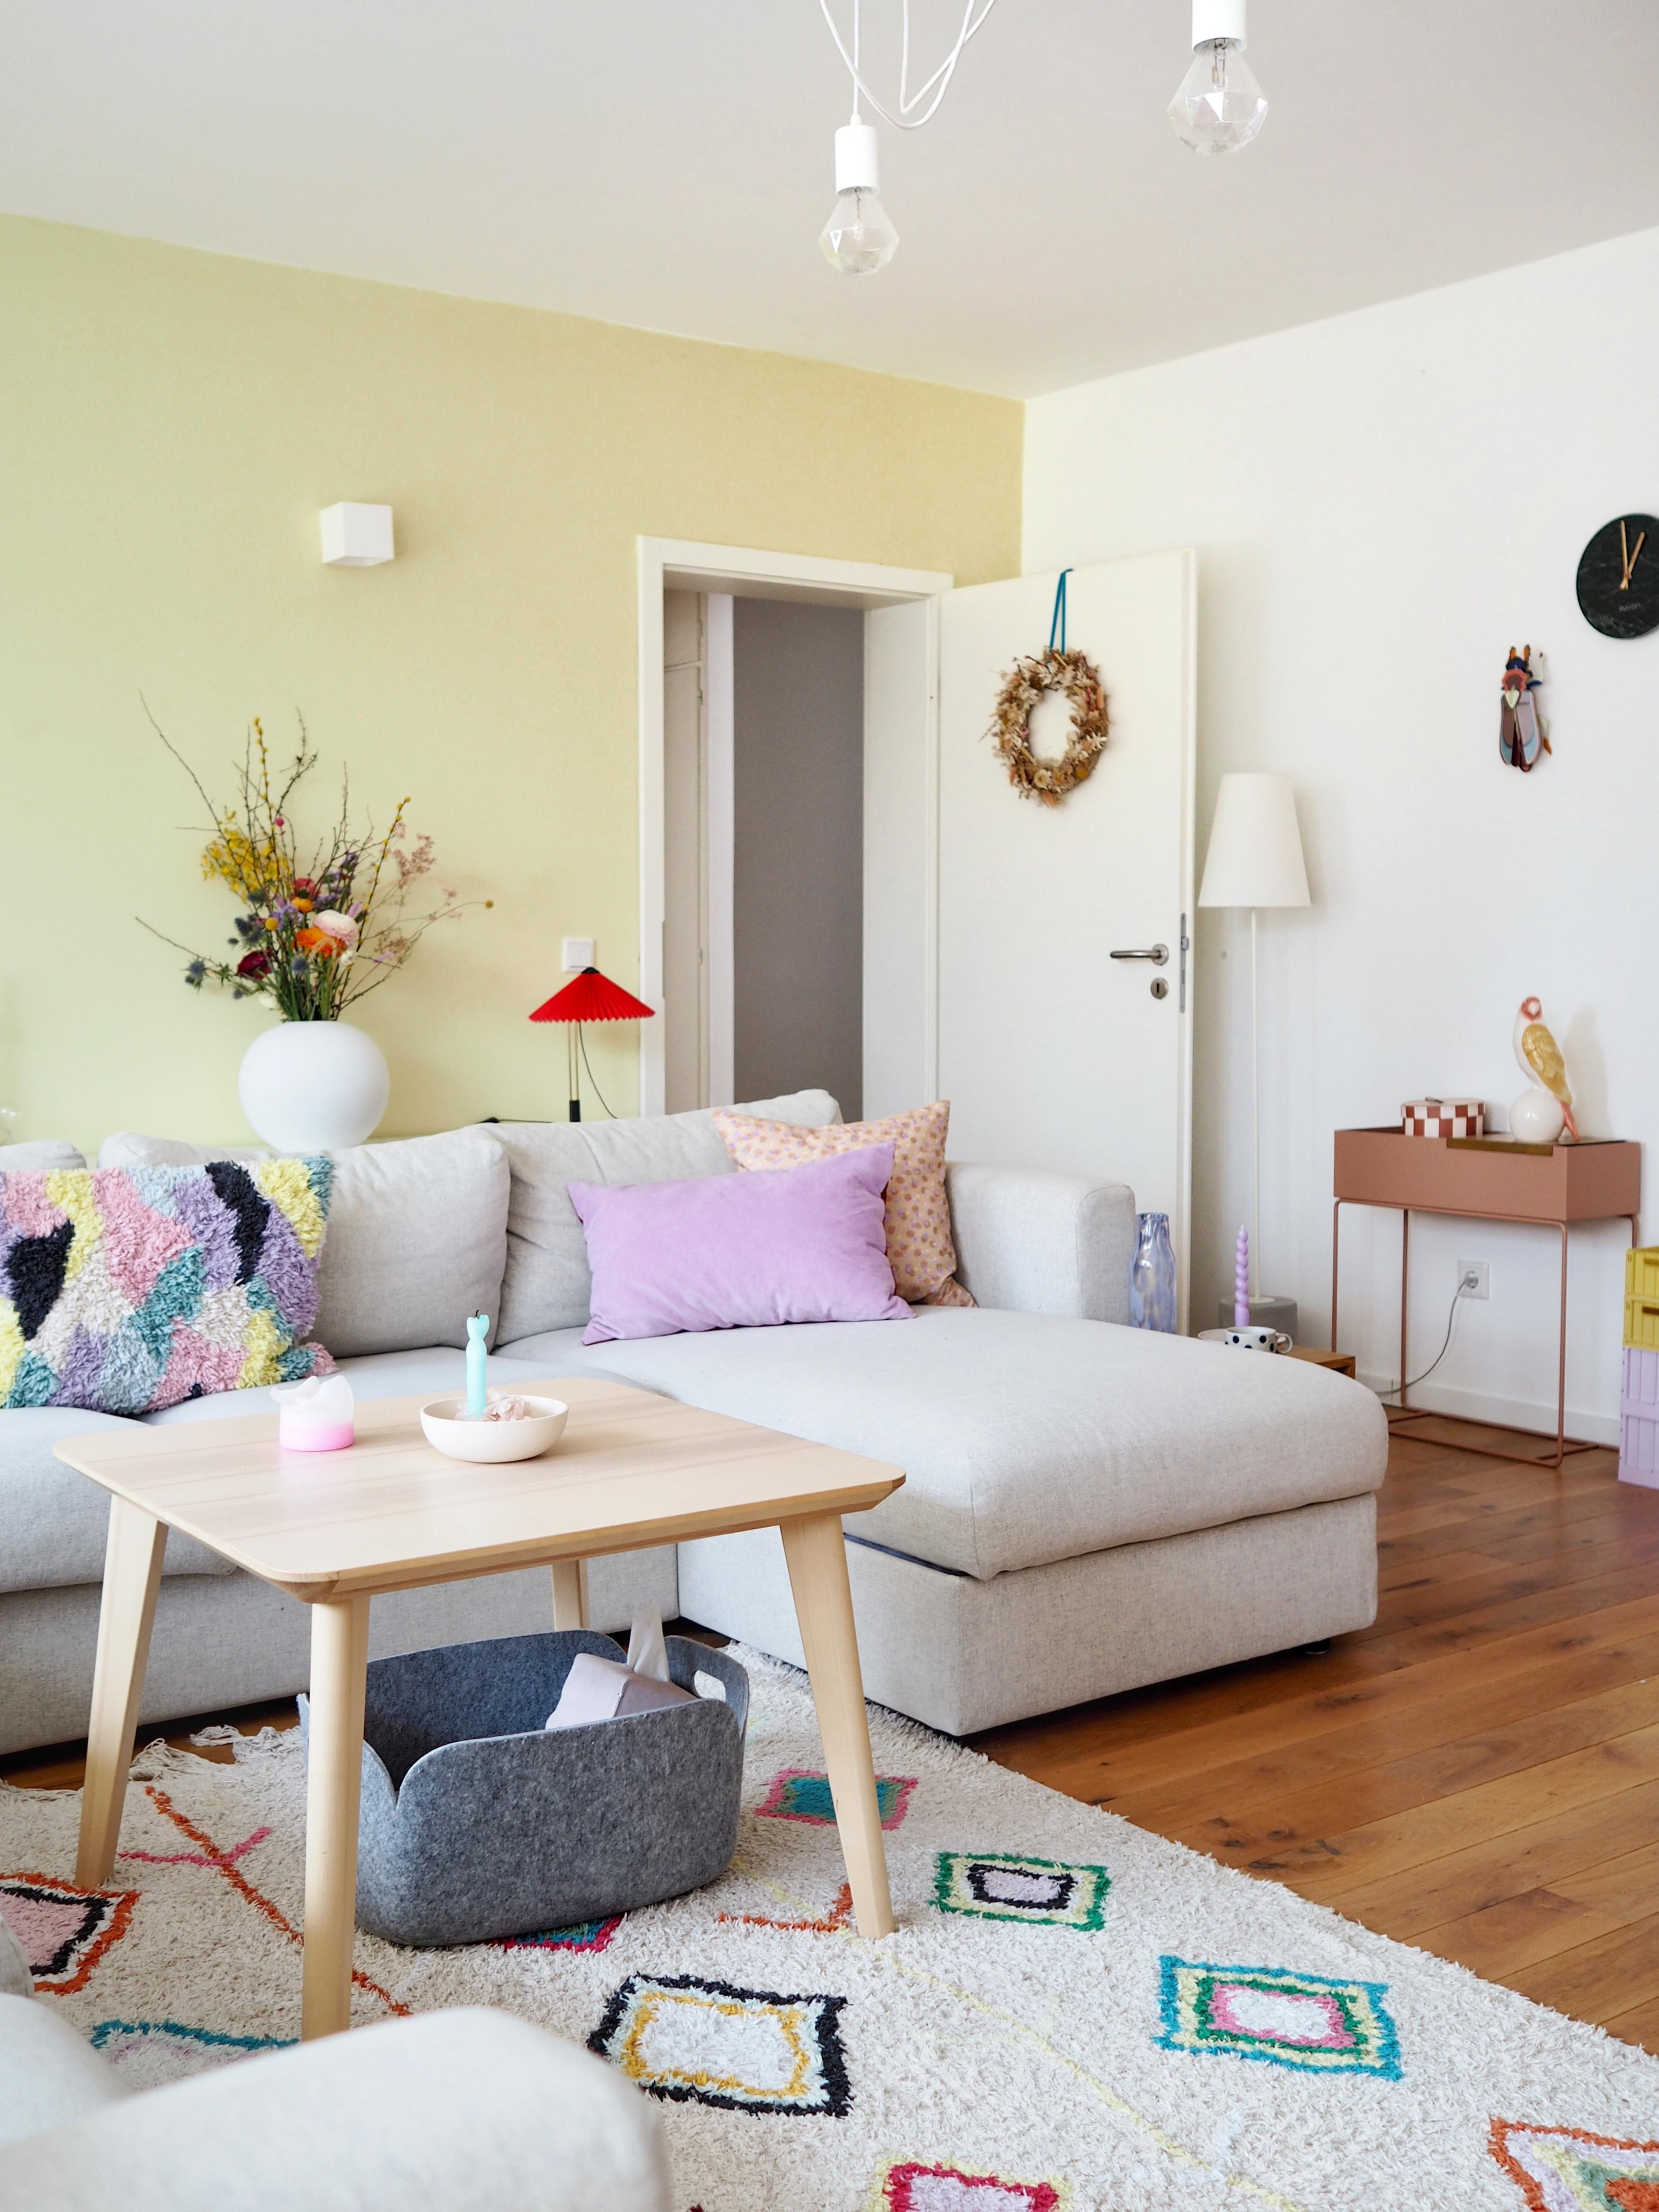 Unsere Couch erstrahlt in neuen Farben!
#couchstyle #farbenfroh